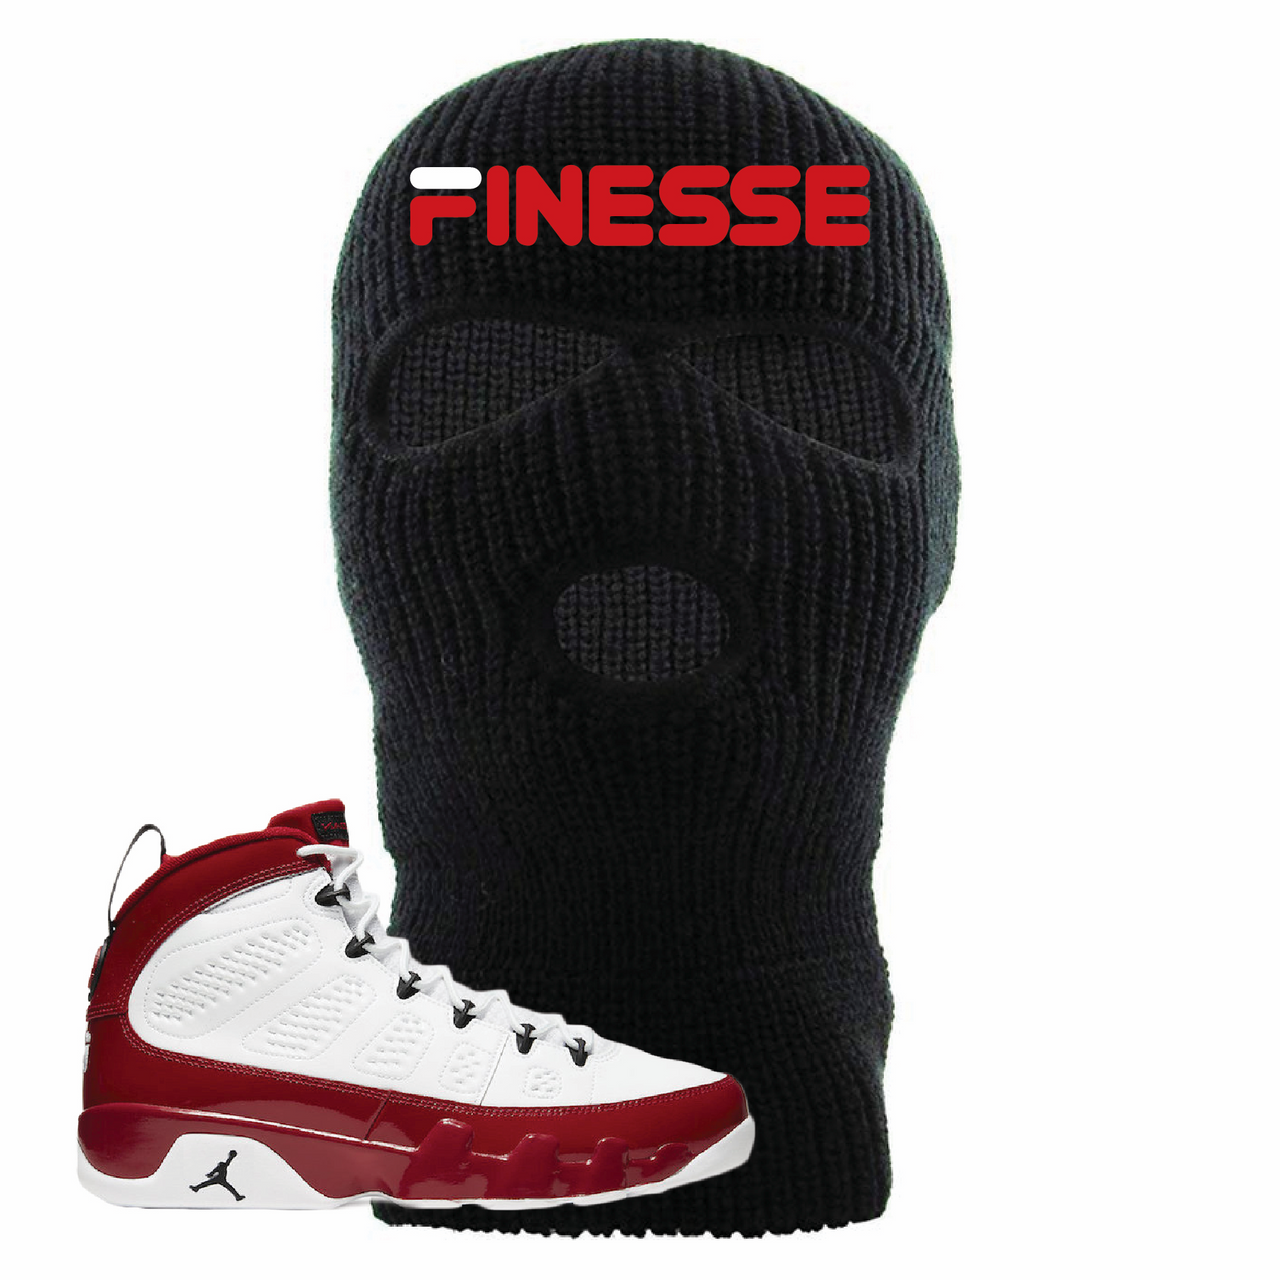 Jordan 9 Gym Red Finesse Black Sneaker Hook Up Ski Mask